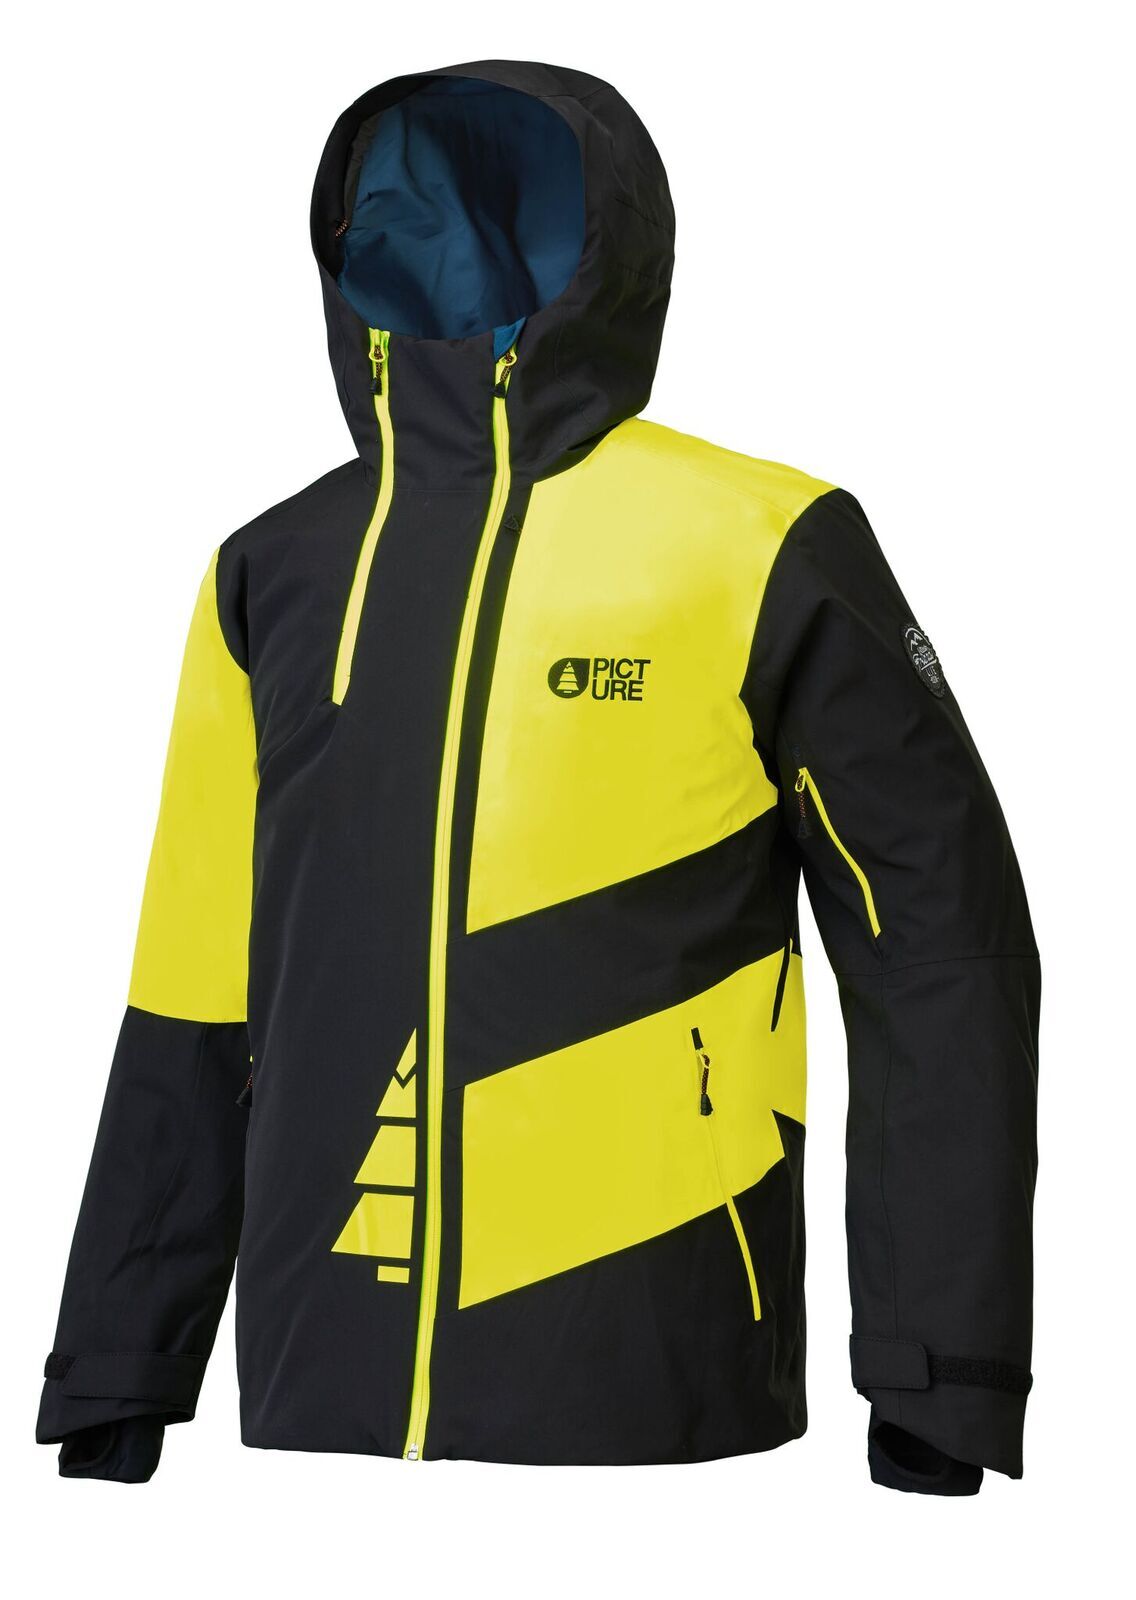 Picture Organic Clothing - Alpin - Ski jacket - Men's